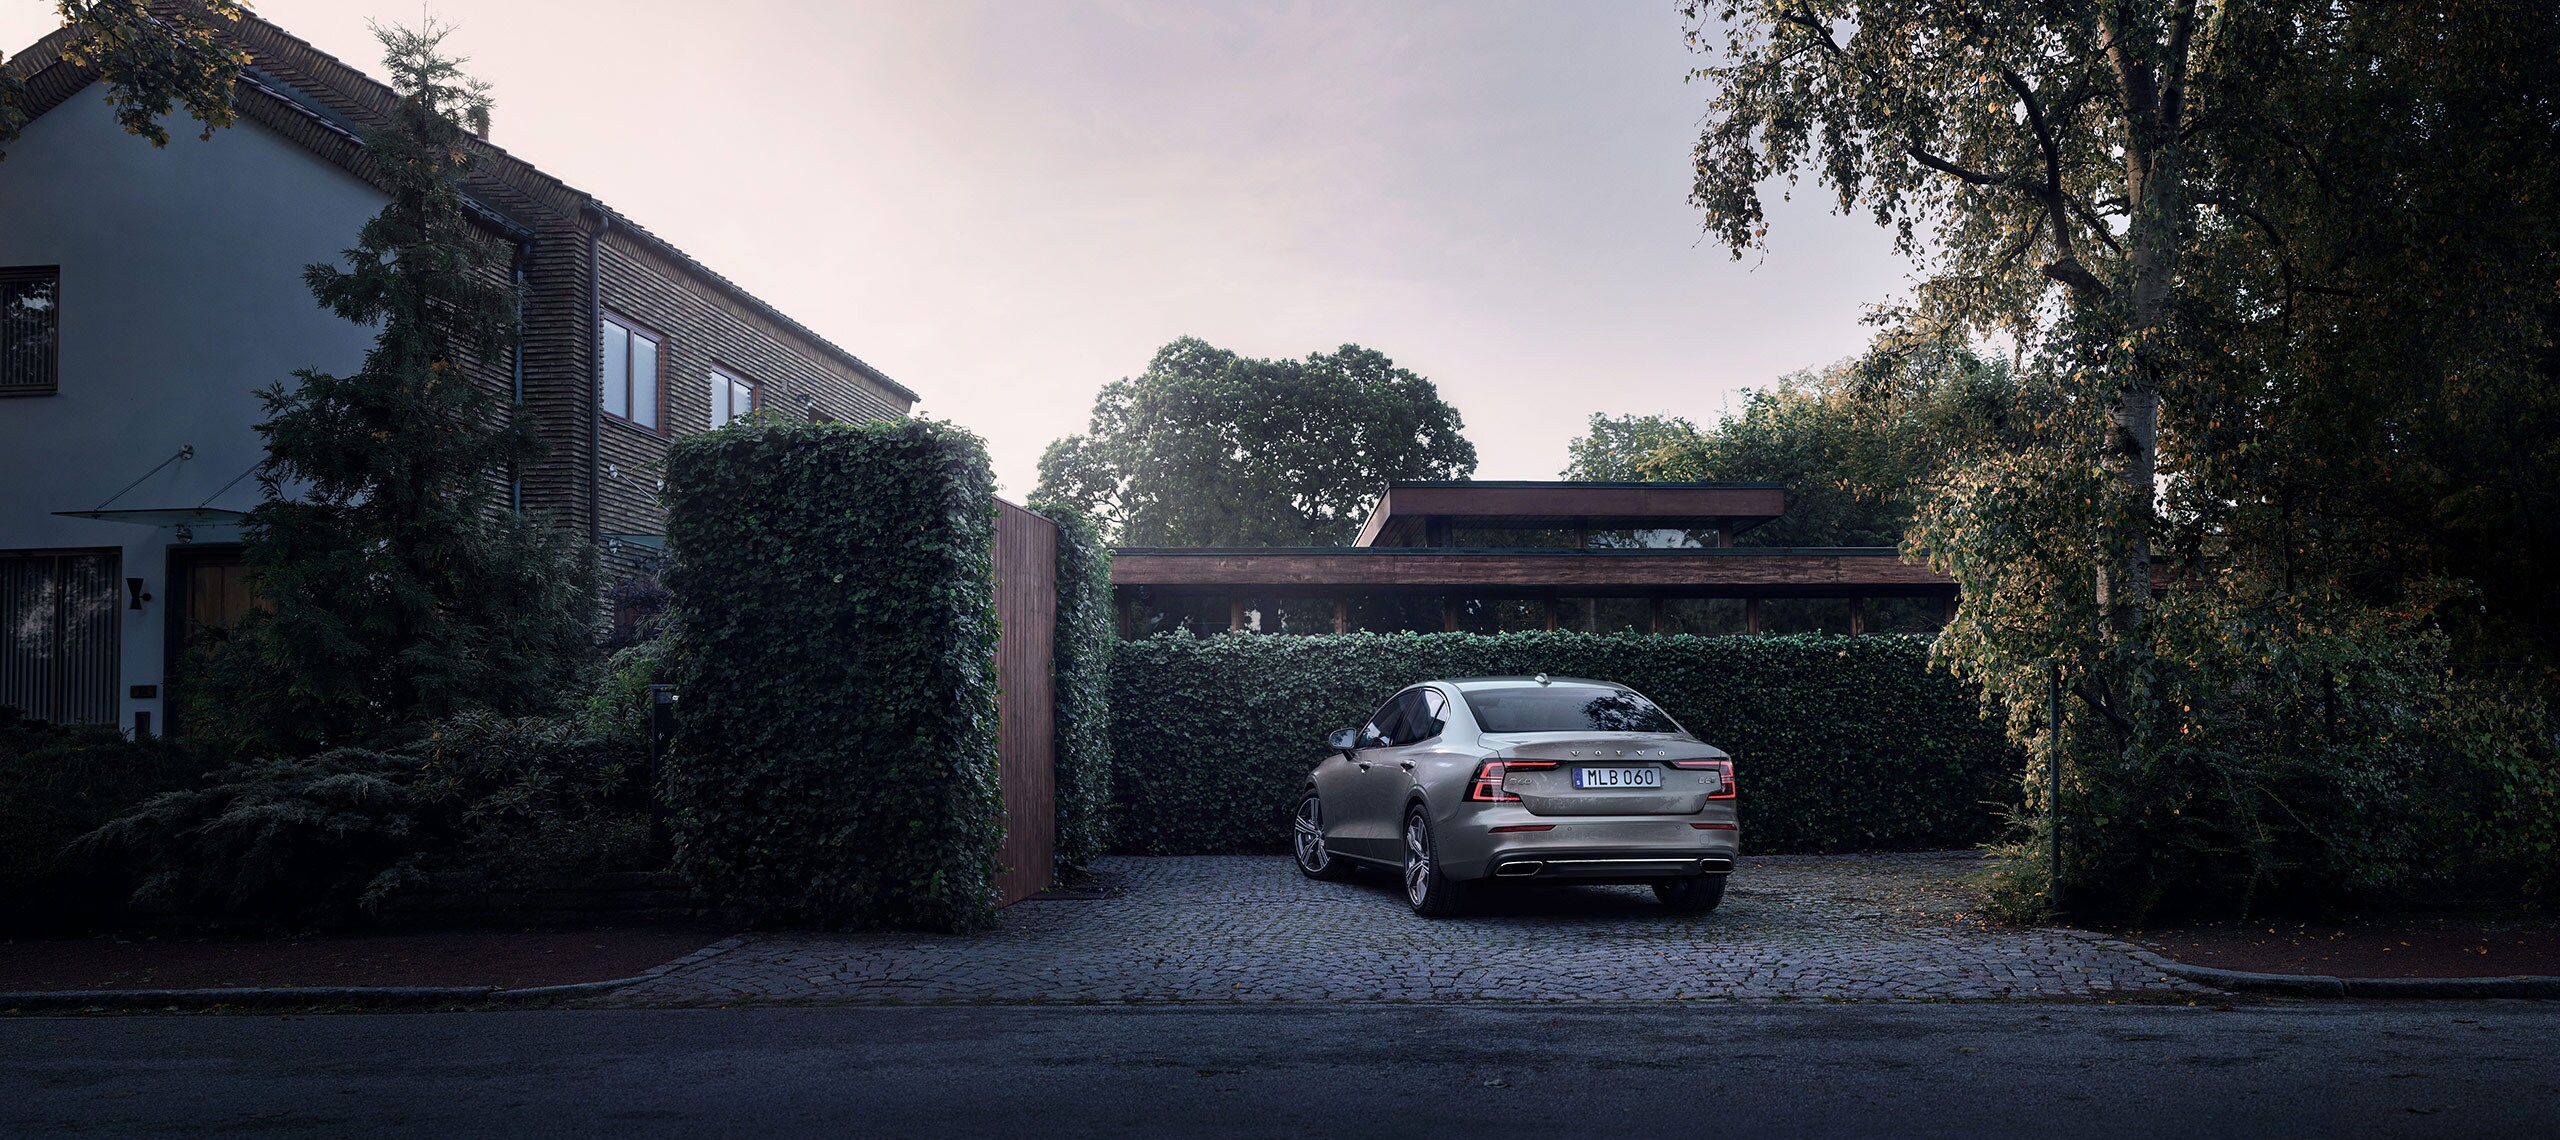 Grå Volvo S60 parkerad vid villa